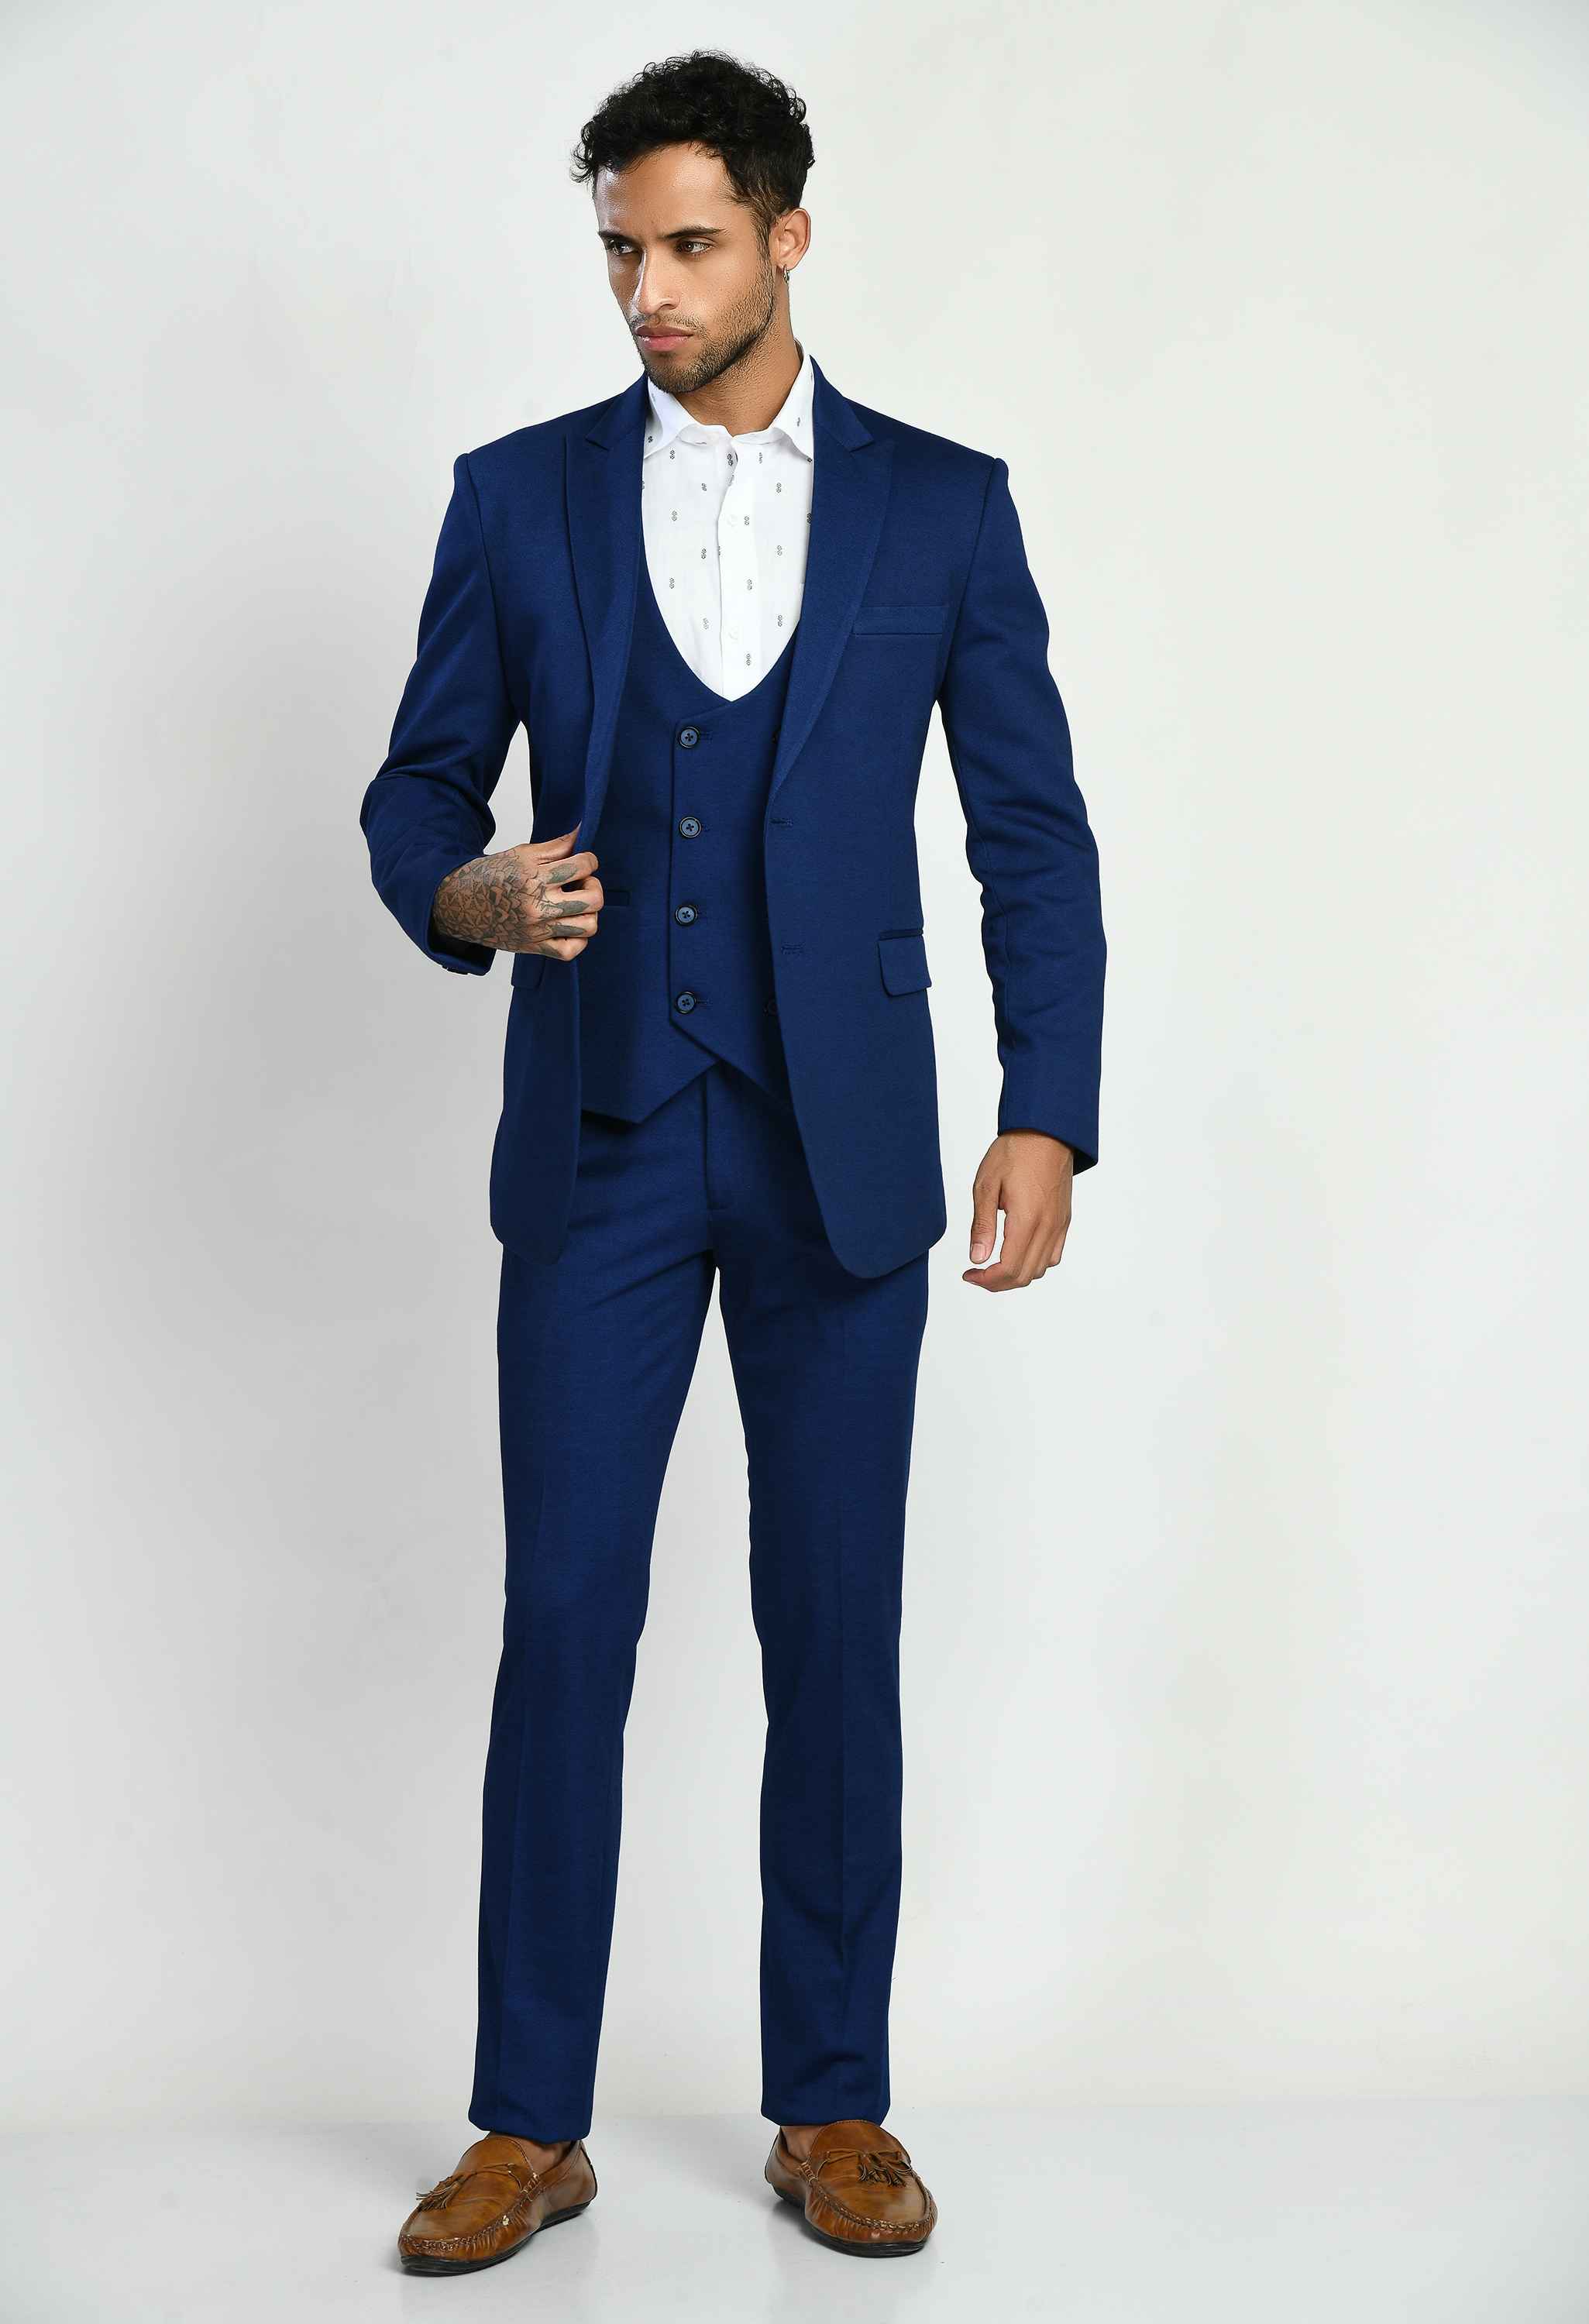 Men's Charming Blue Suit Set